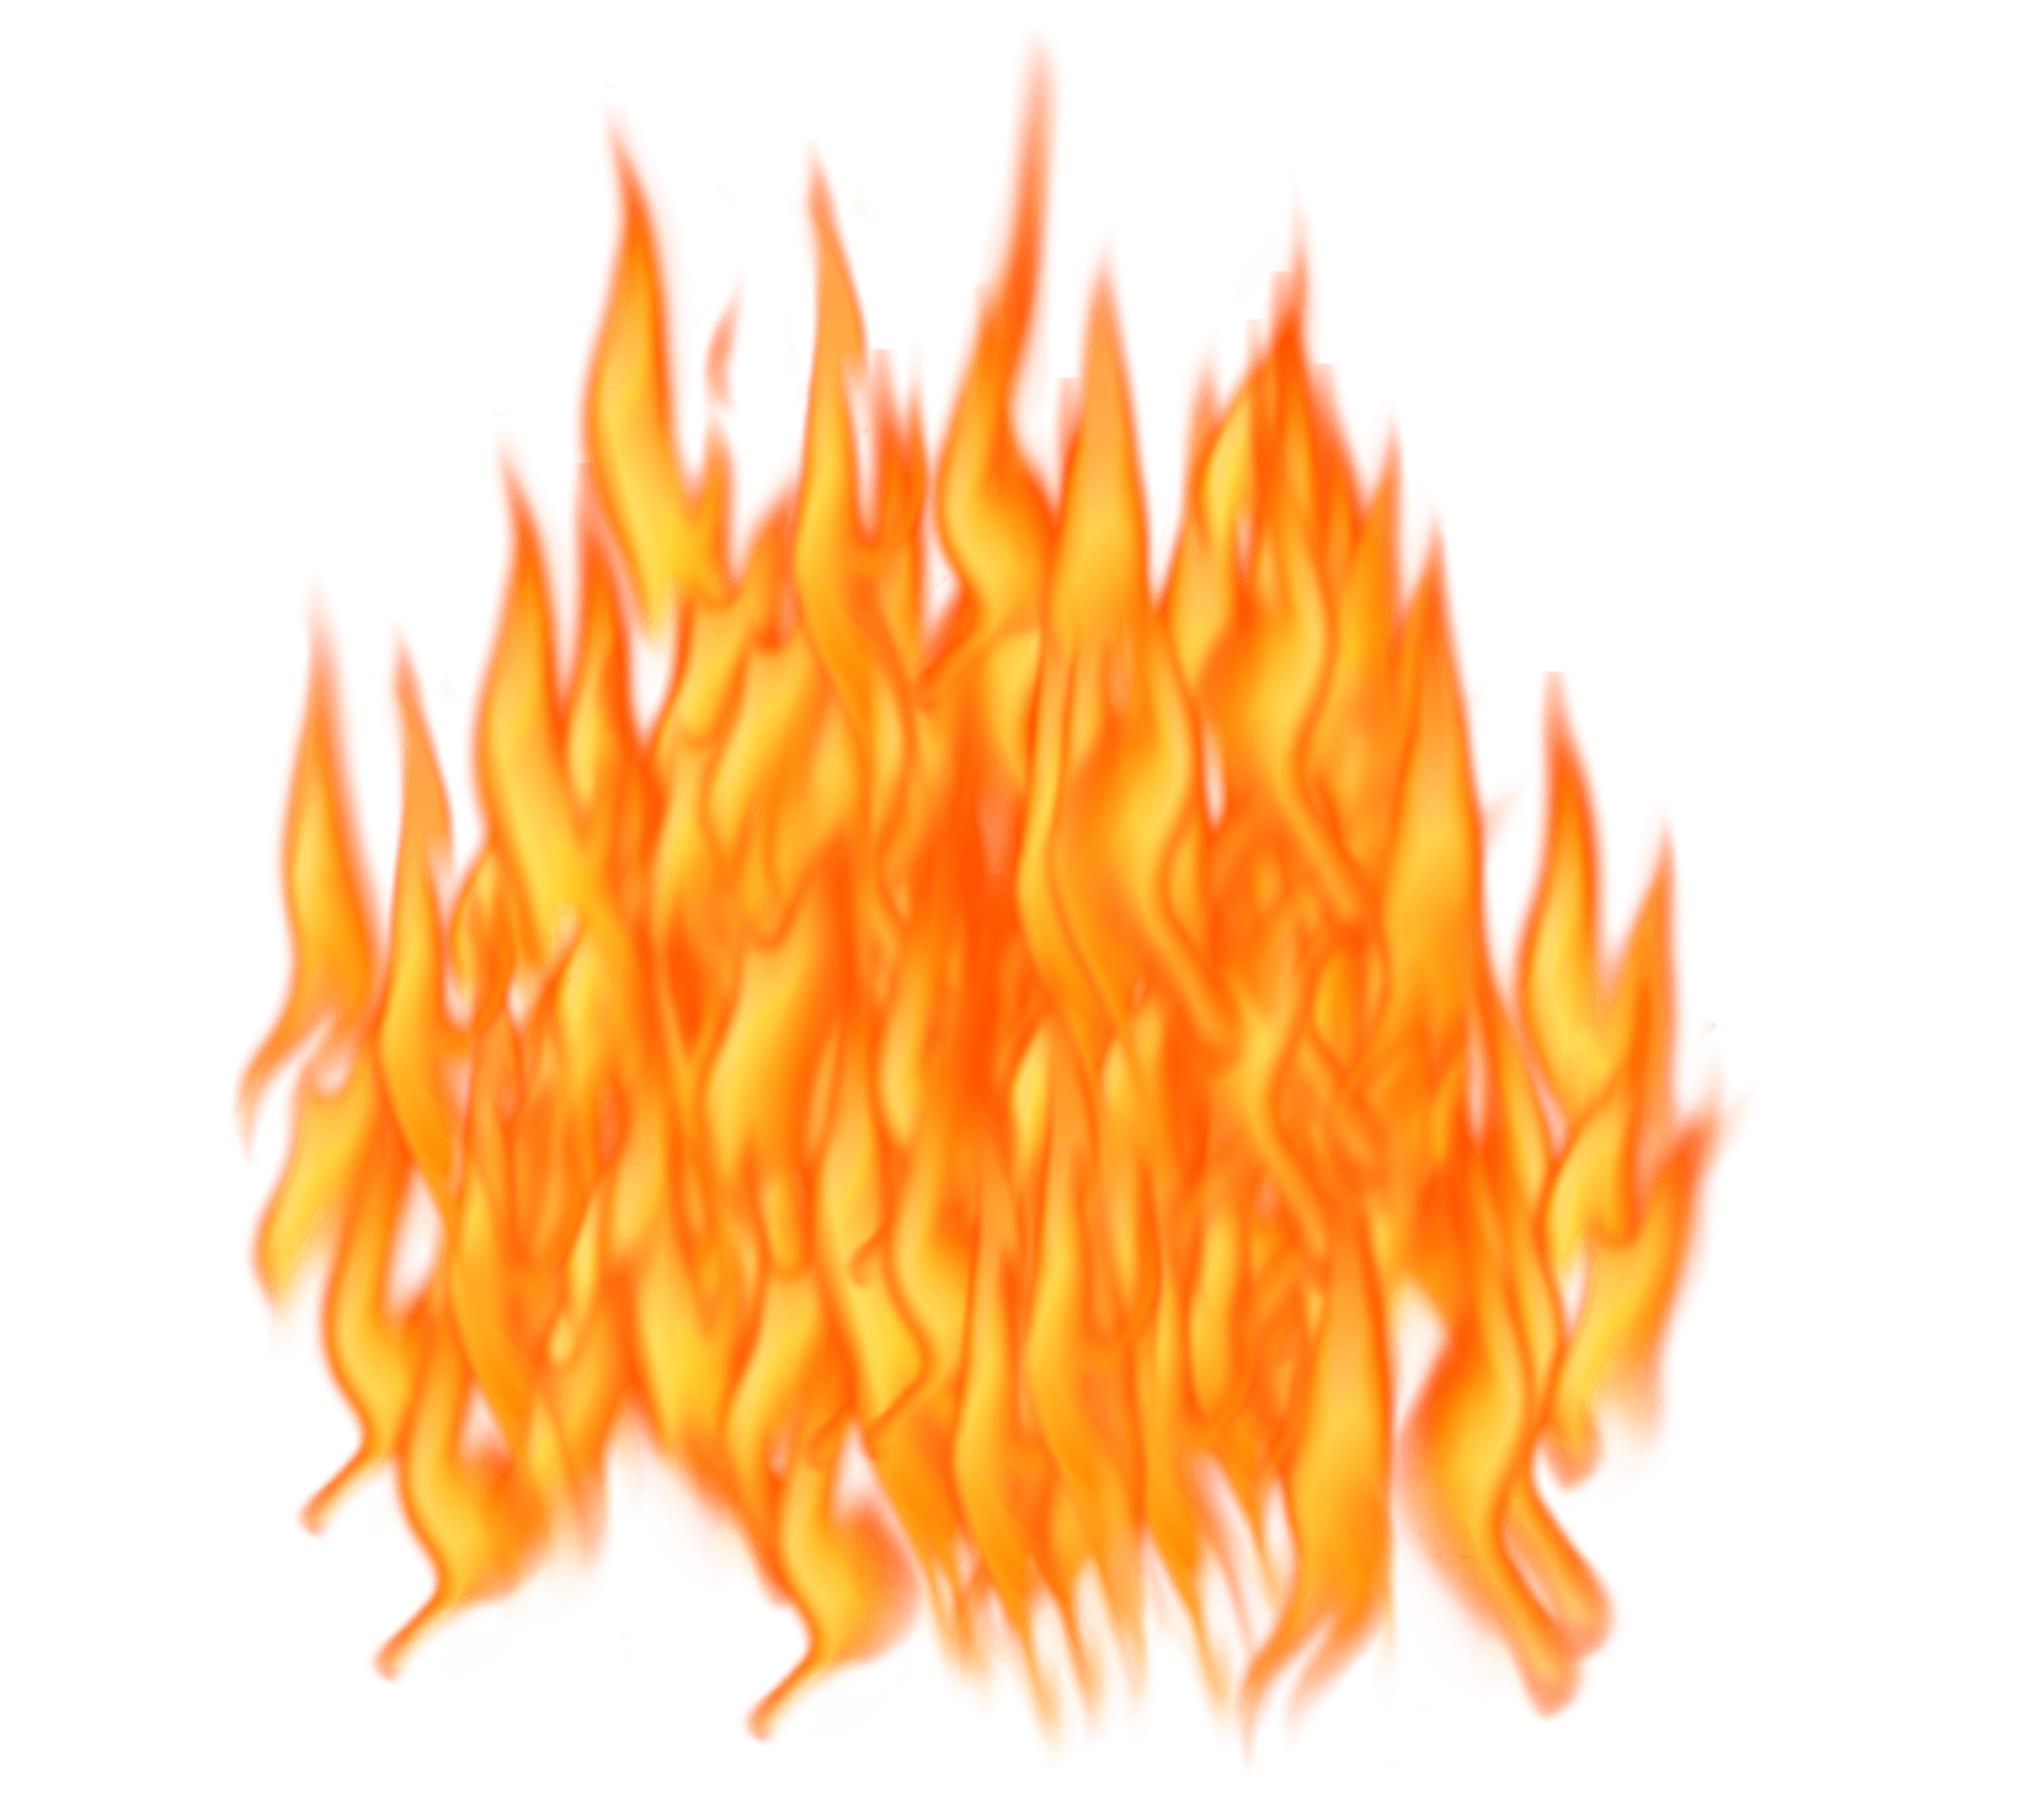 Flame Api unggun Transparan PNG